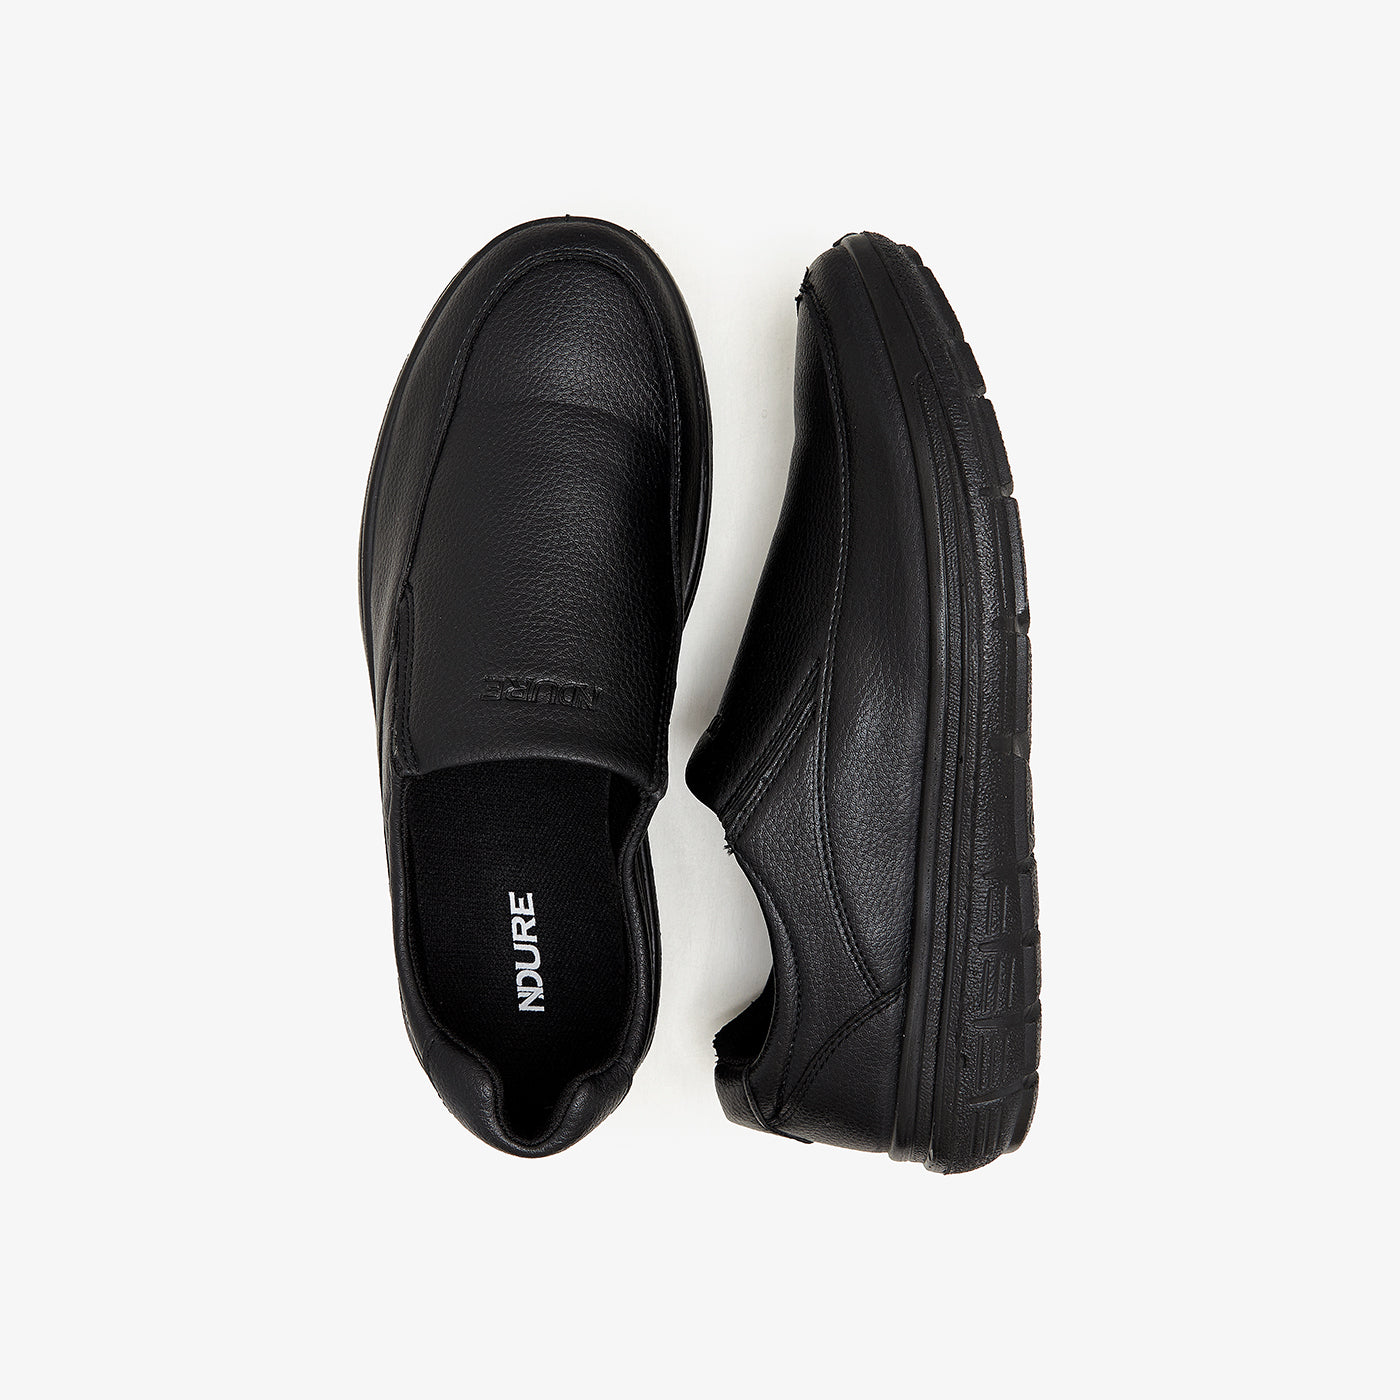 Buy Men Loafers & Moccs -Men's Casual Boots M-OB-STR-0007 – Ndure.com